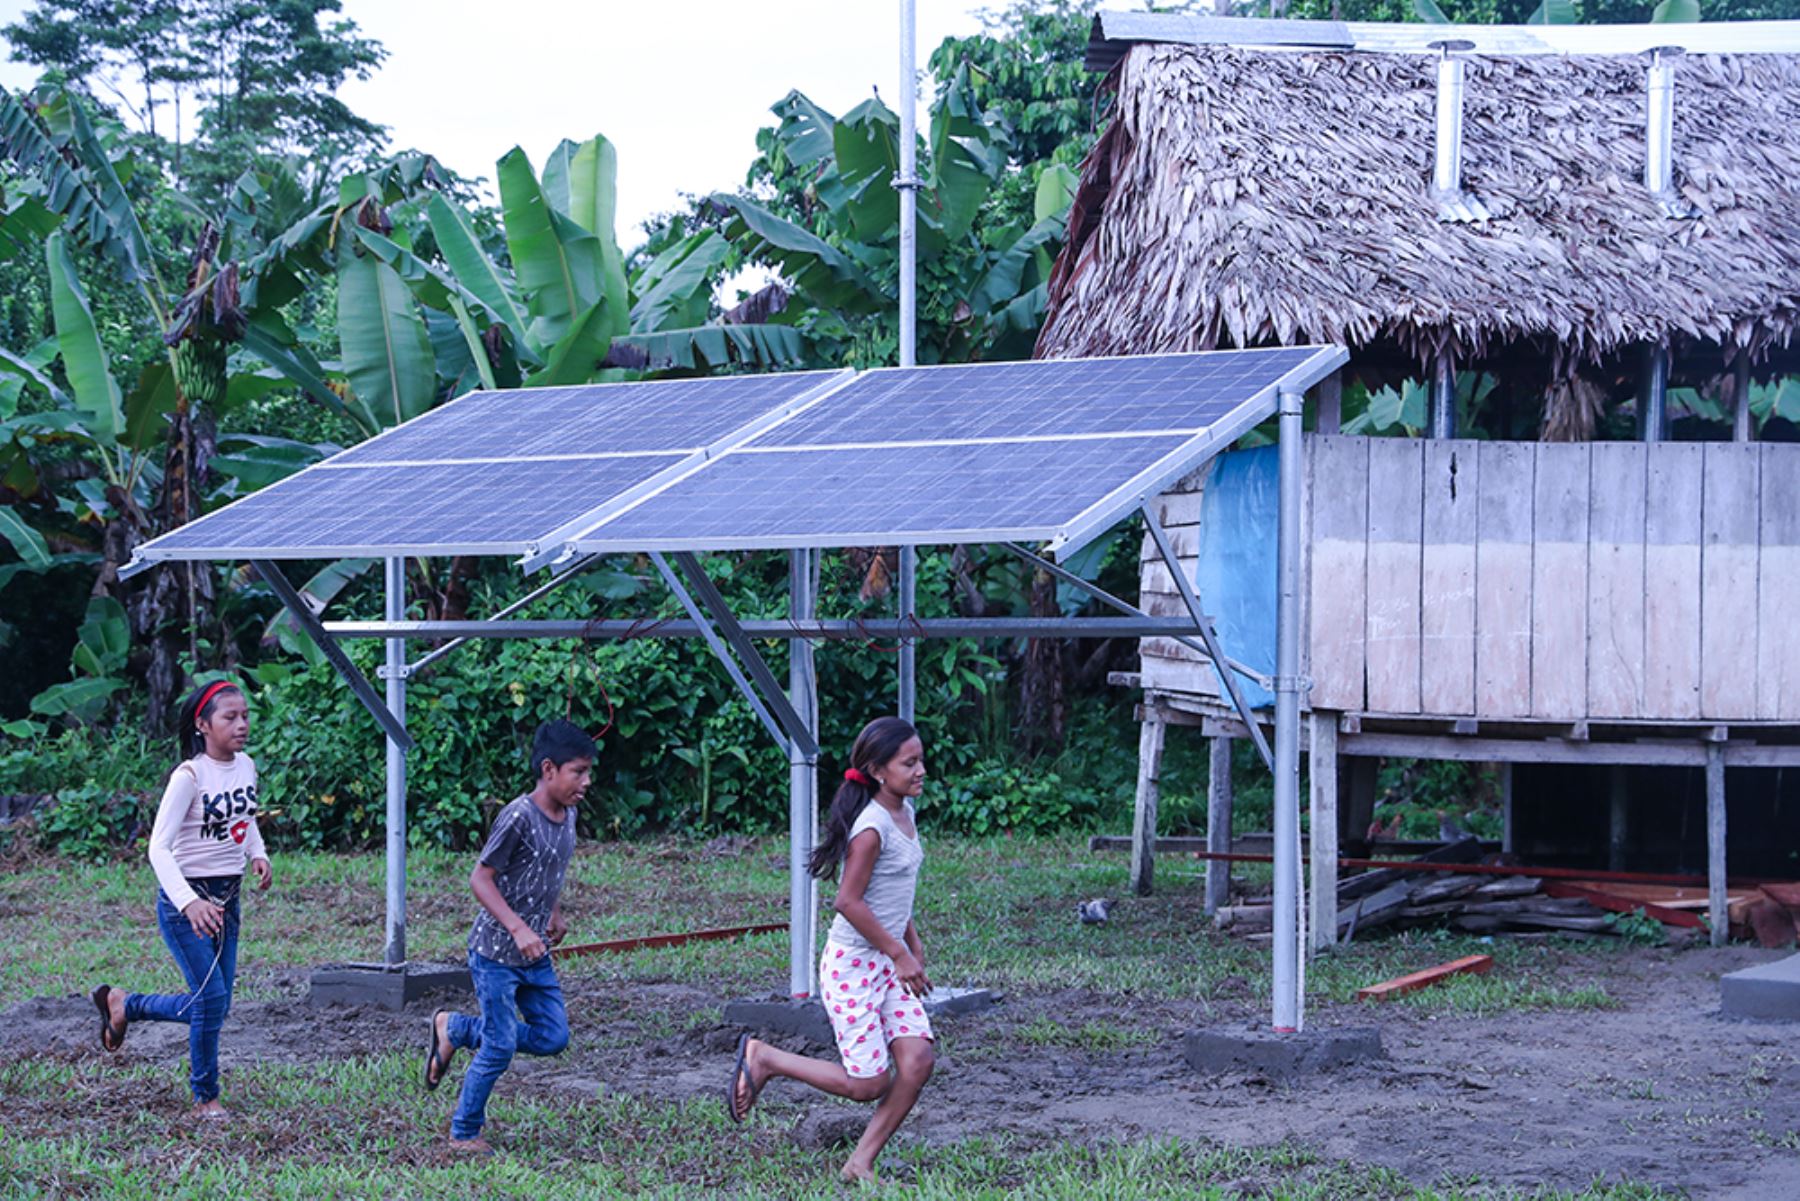 El MEM continuará trabajando en la región Loreto con el objetivo de lograr que para el 2019 un total de 12,000 familias puedan contar con el servicio de energía fotovoltaica.